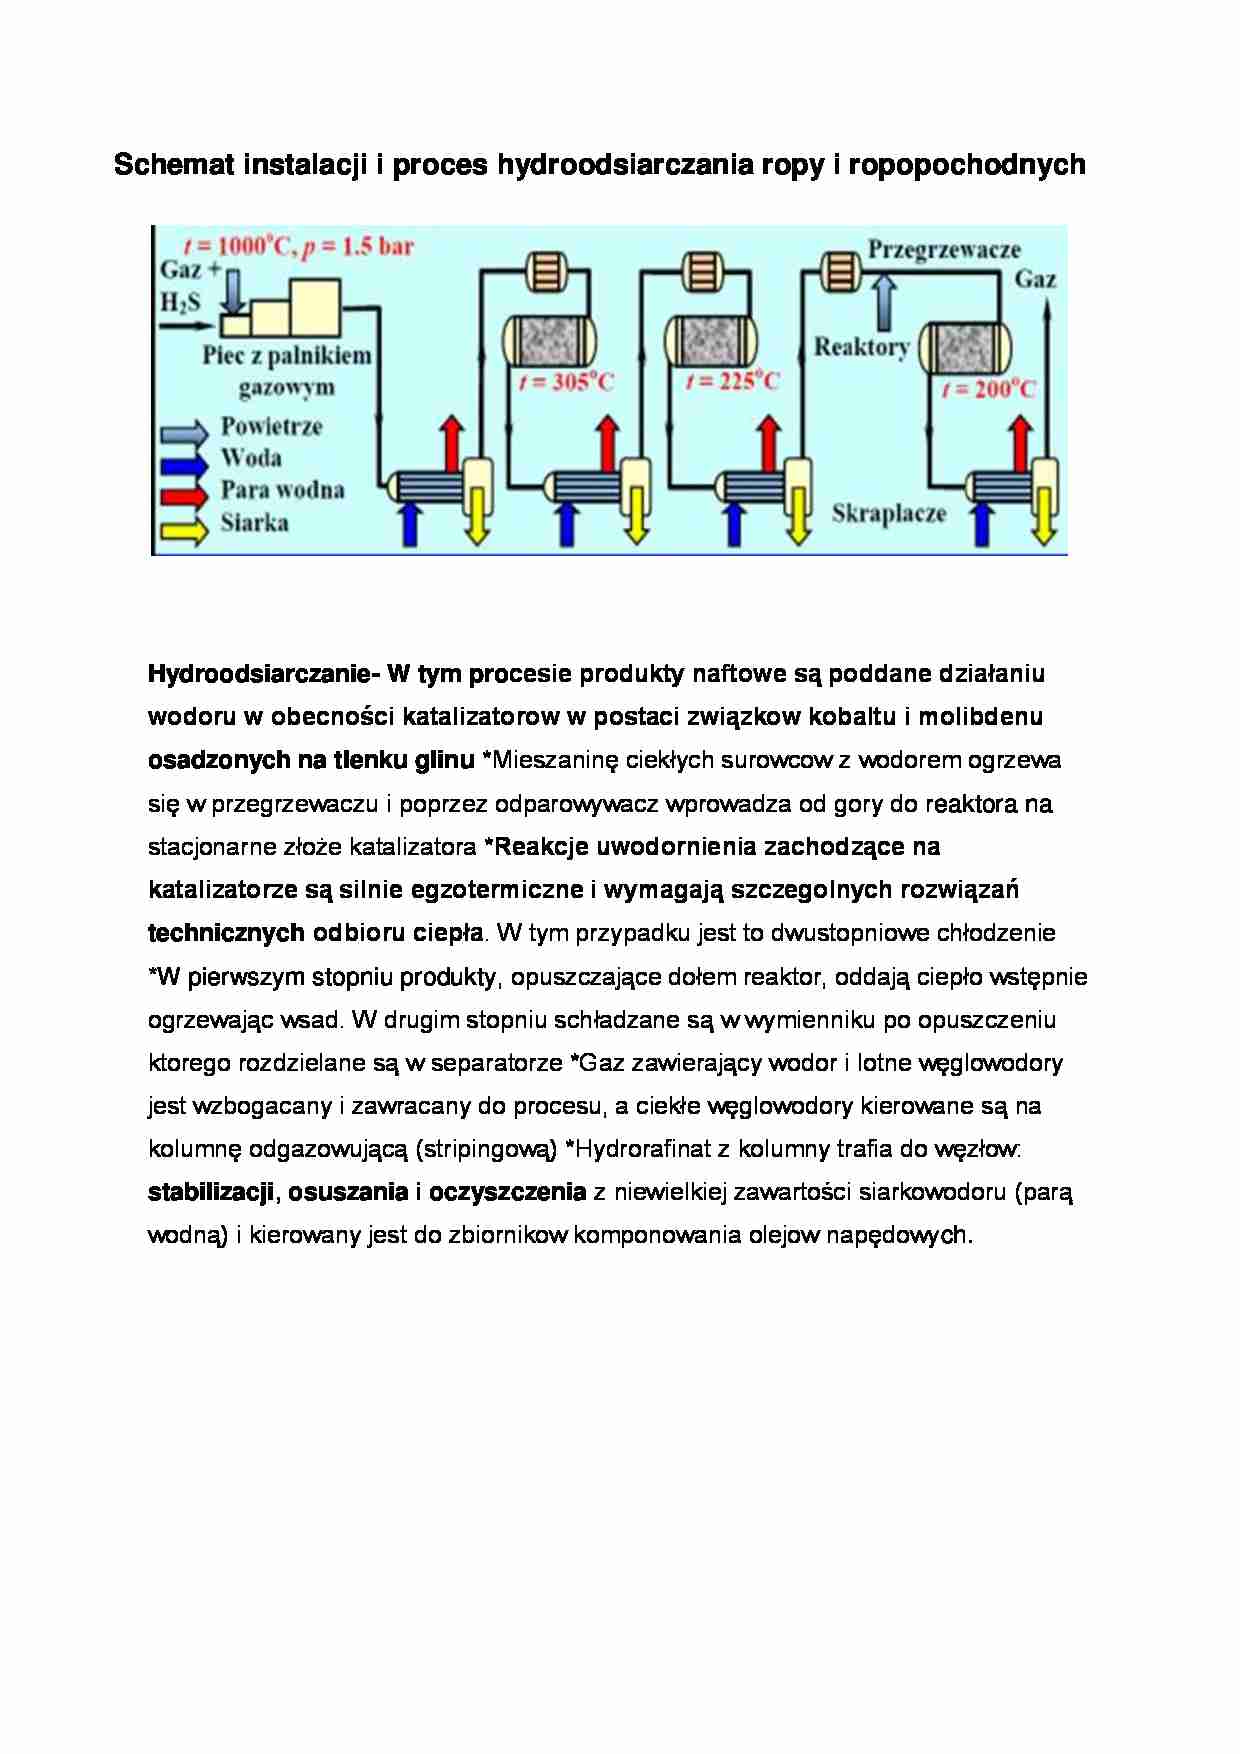 Schemat instalacji i proces hydroodsiarczania - wykład - strona 1